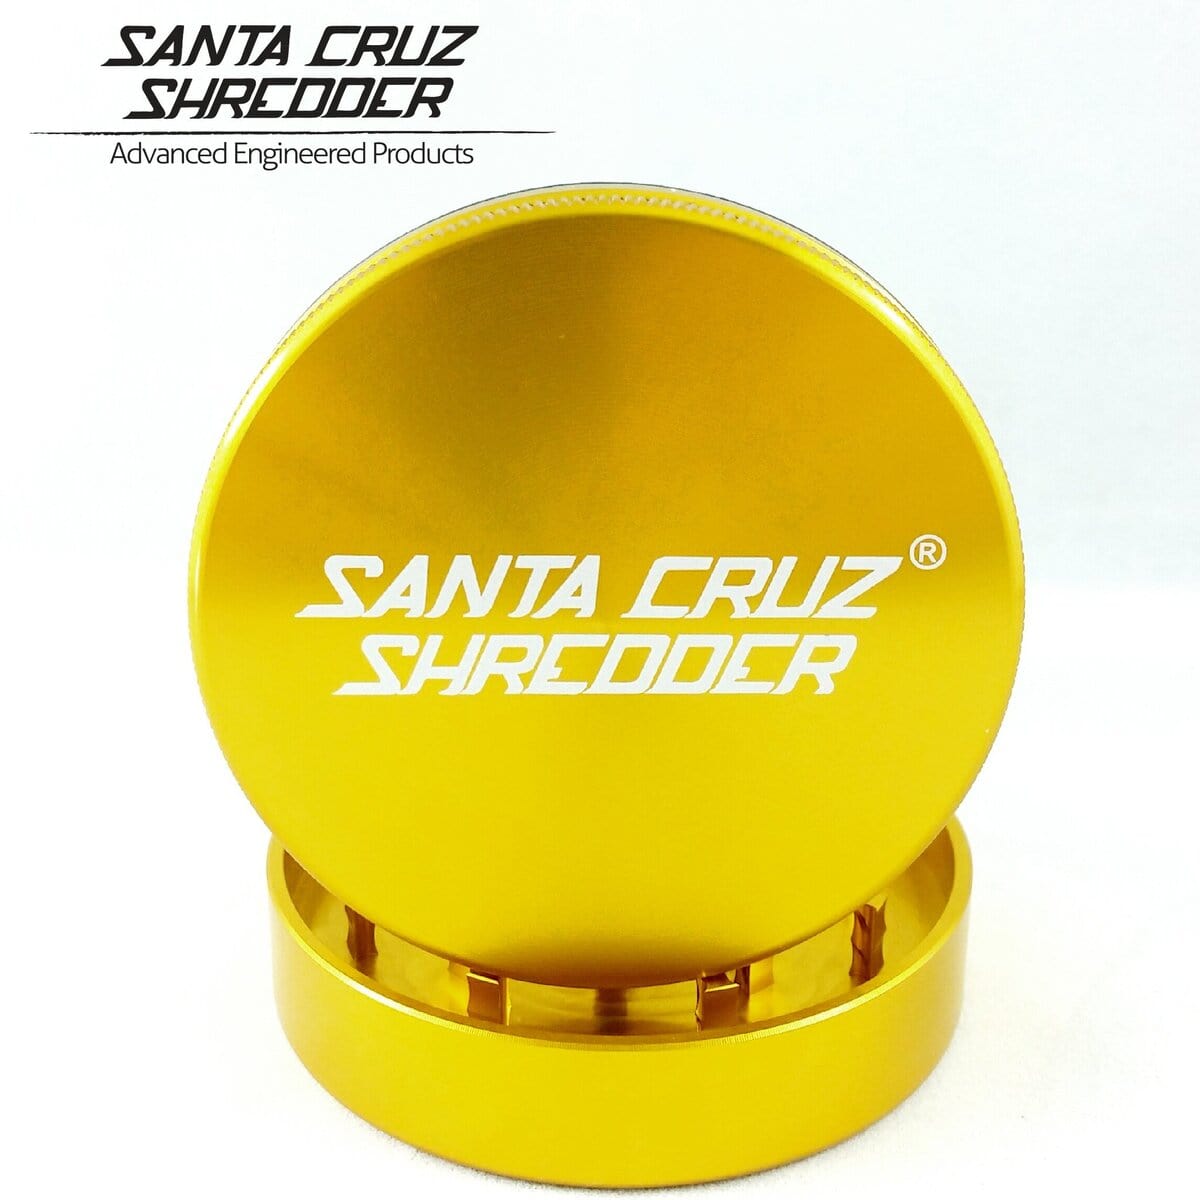 Santa Cruz Shredder Grinder Gold Santa Cruz Shredder 2 Piece Medium Grinder